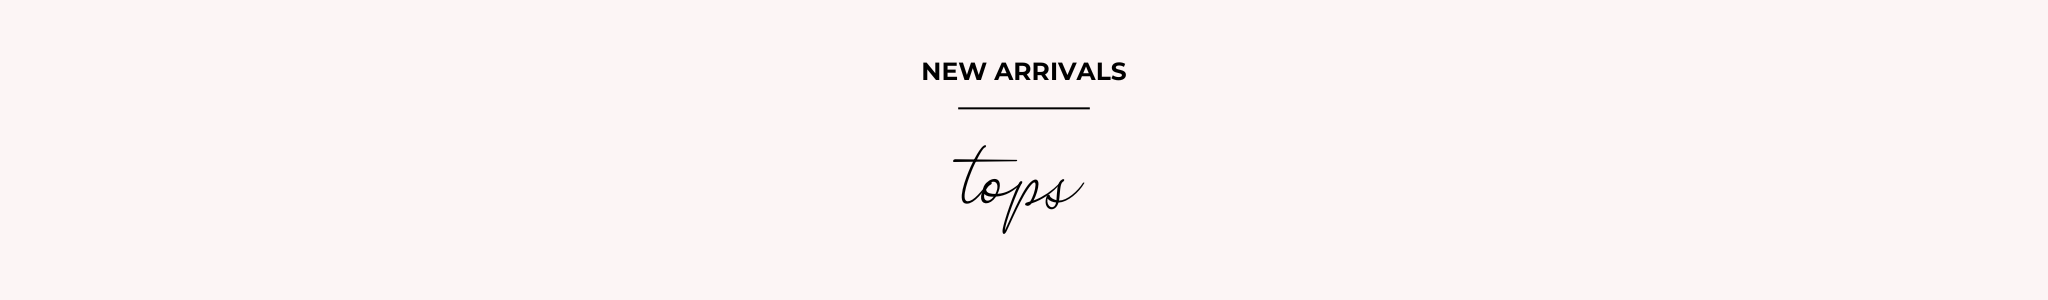 NEW ARRIVALS - TOPS